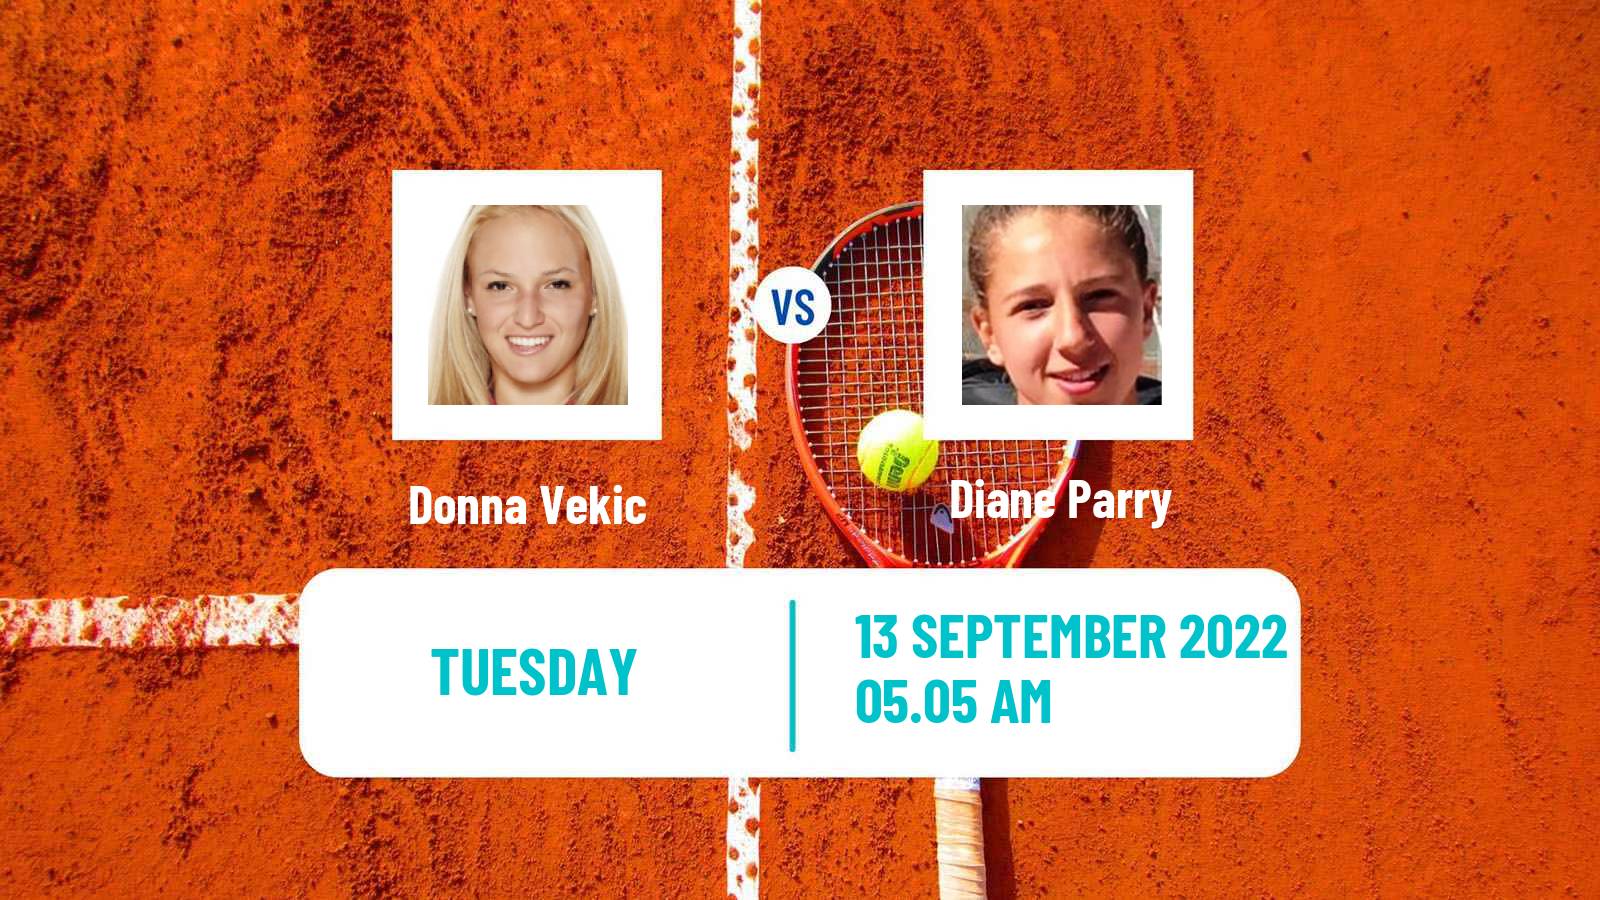 Tennis WTA Portoroz Donna Vekic - Diane Parry